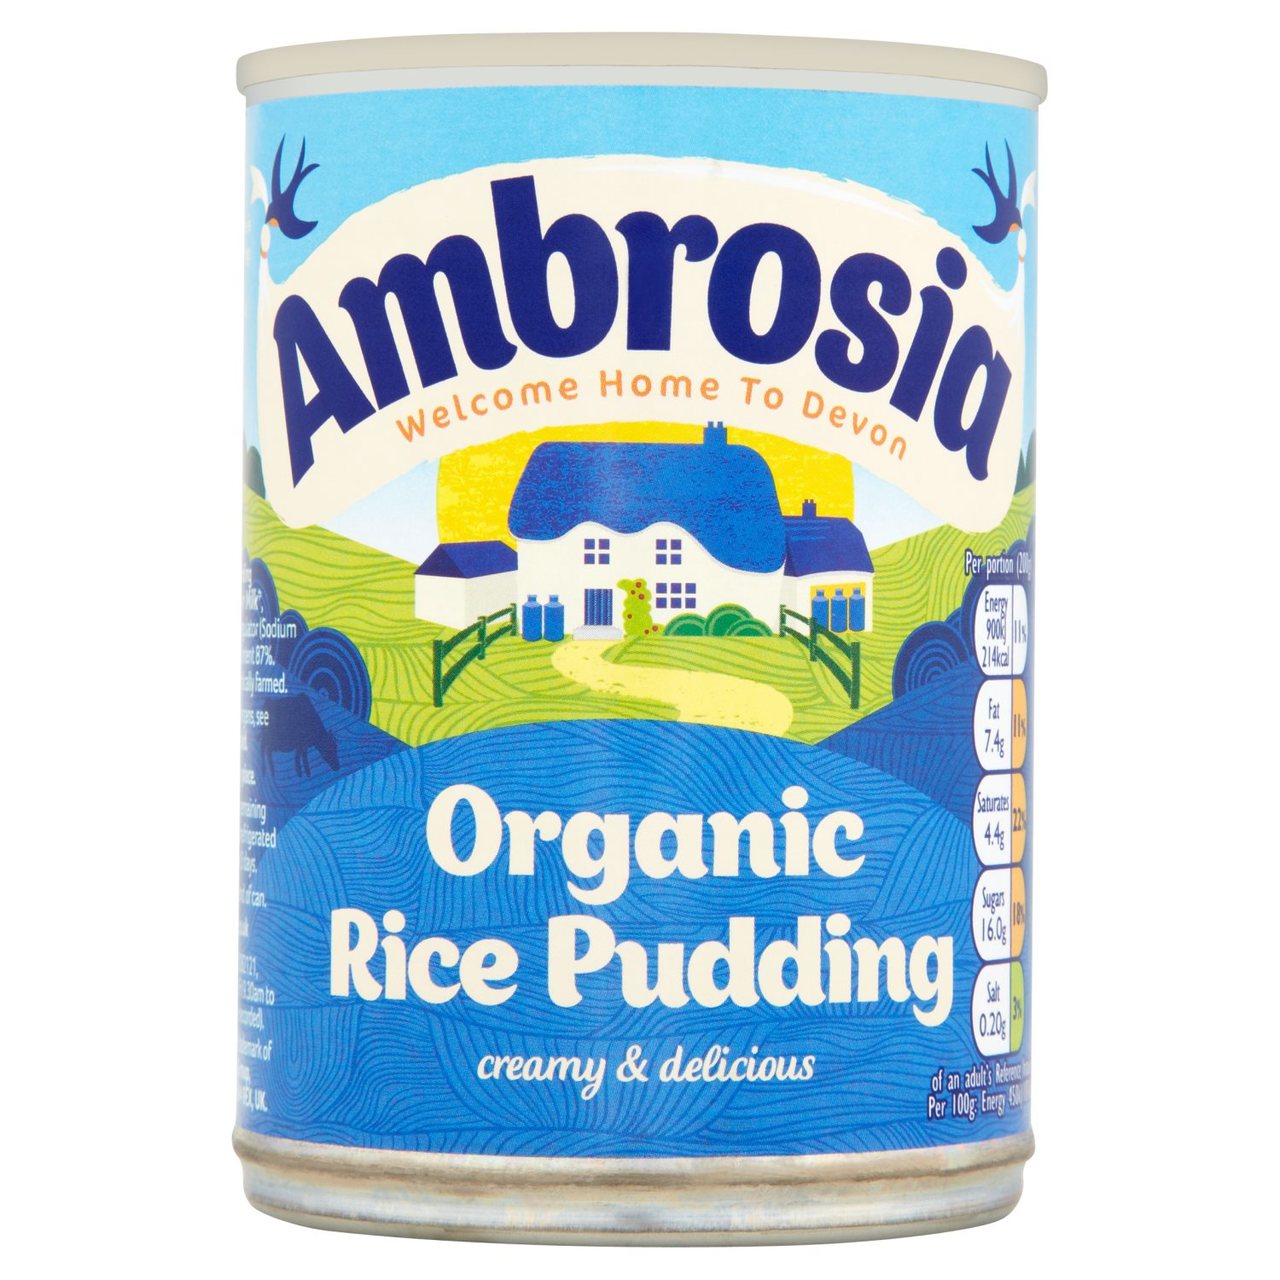 Ambrosia Organic Rice Pudding 400g